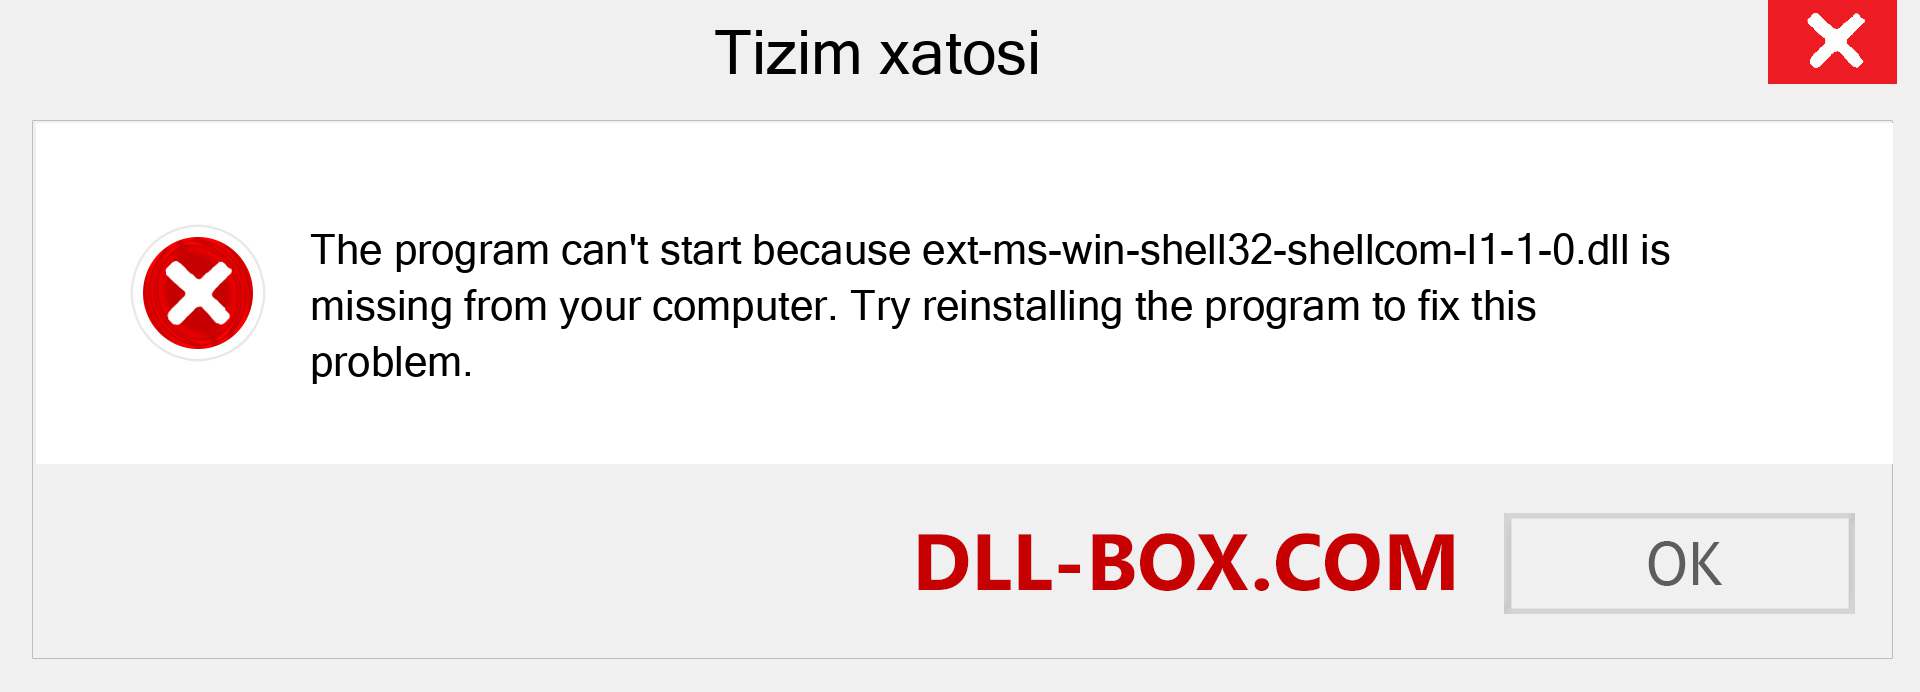 ext-ms-win-shell32-shellcom-l1-1-0.dll fayli yo'qolganmi?. Windows 7, 8, 10 uchun yuklab olish - Windowsda ext-ms-win-shell32-shellcom-l1-1-0 dll etishmayotgan xatoni tuzating, rasmlar, rasmlar